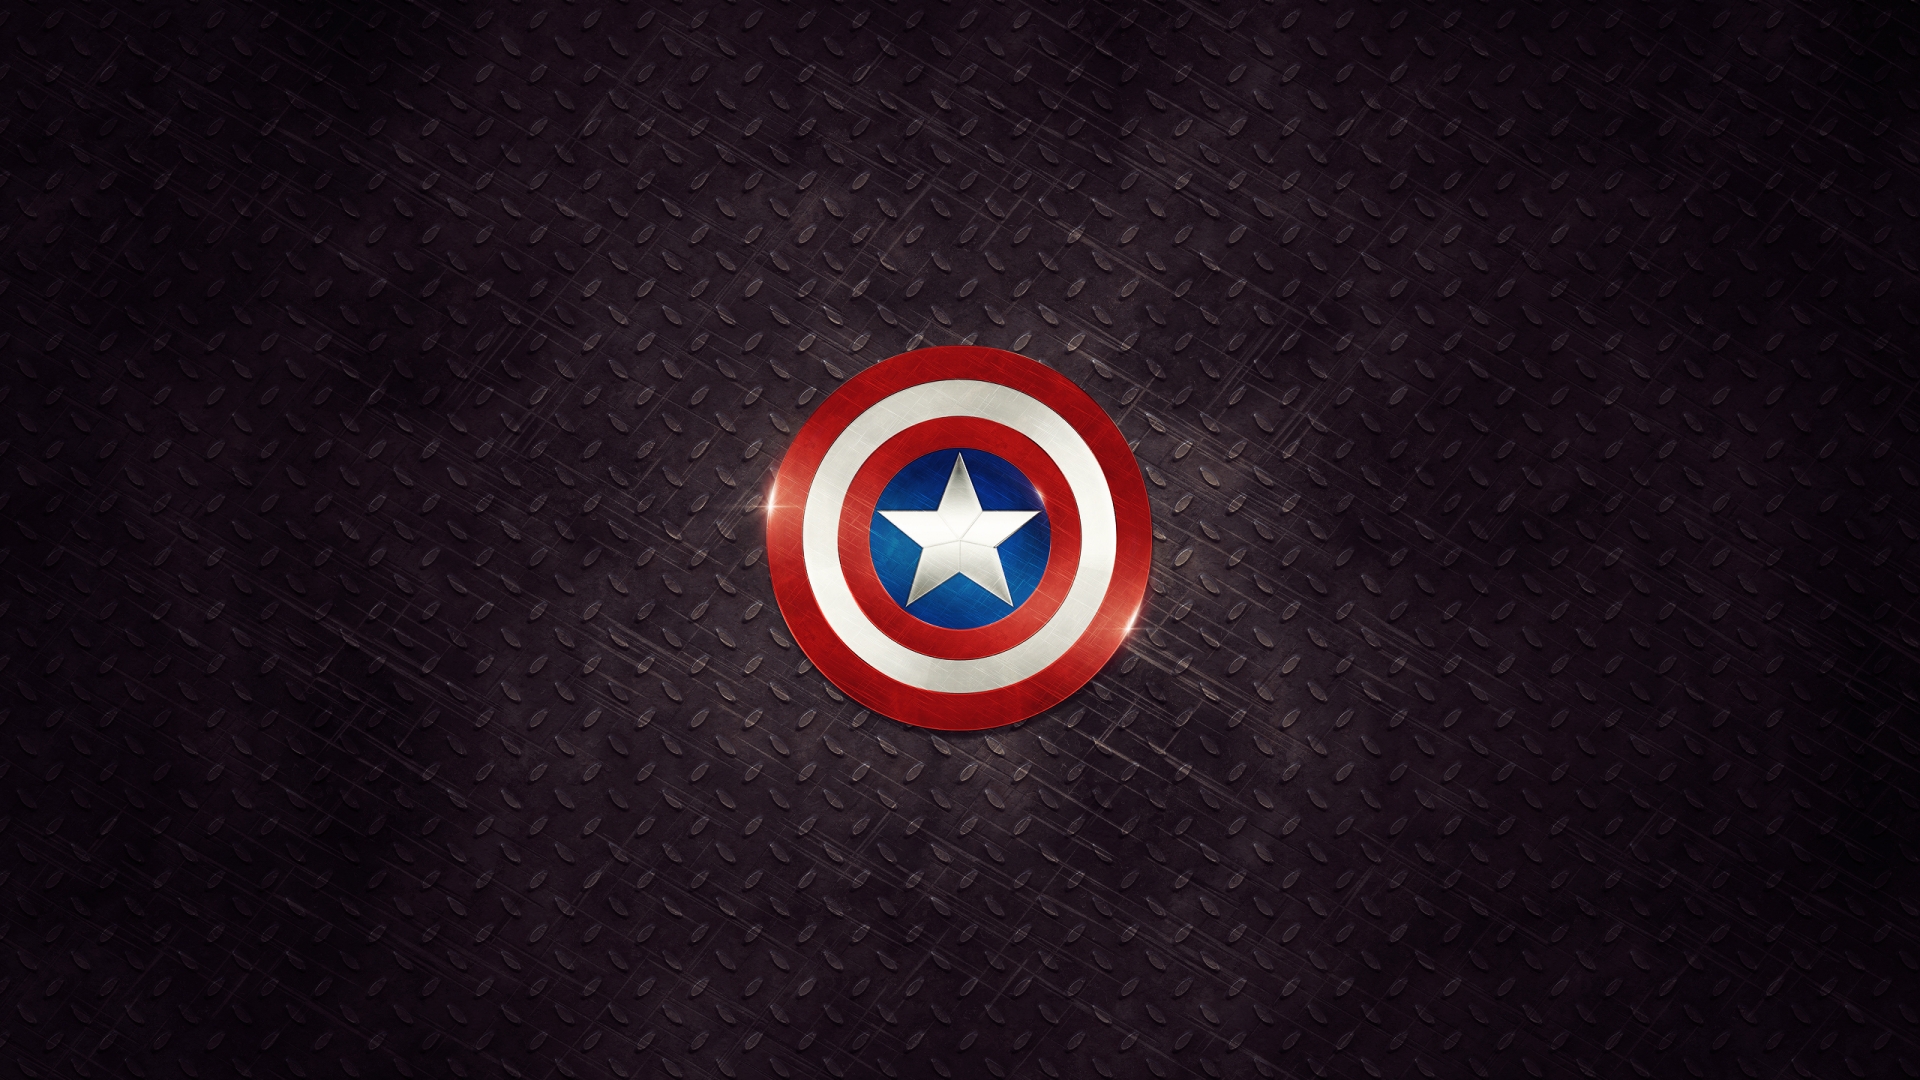 Captain America Logo for 1920 x 1080 HDTV 1080p resolution